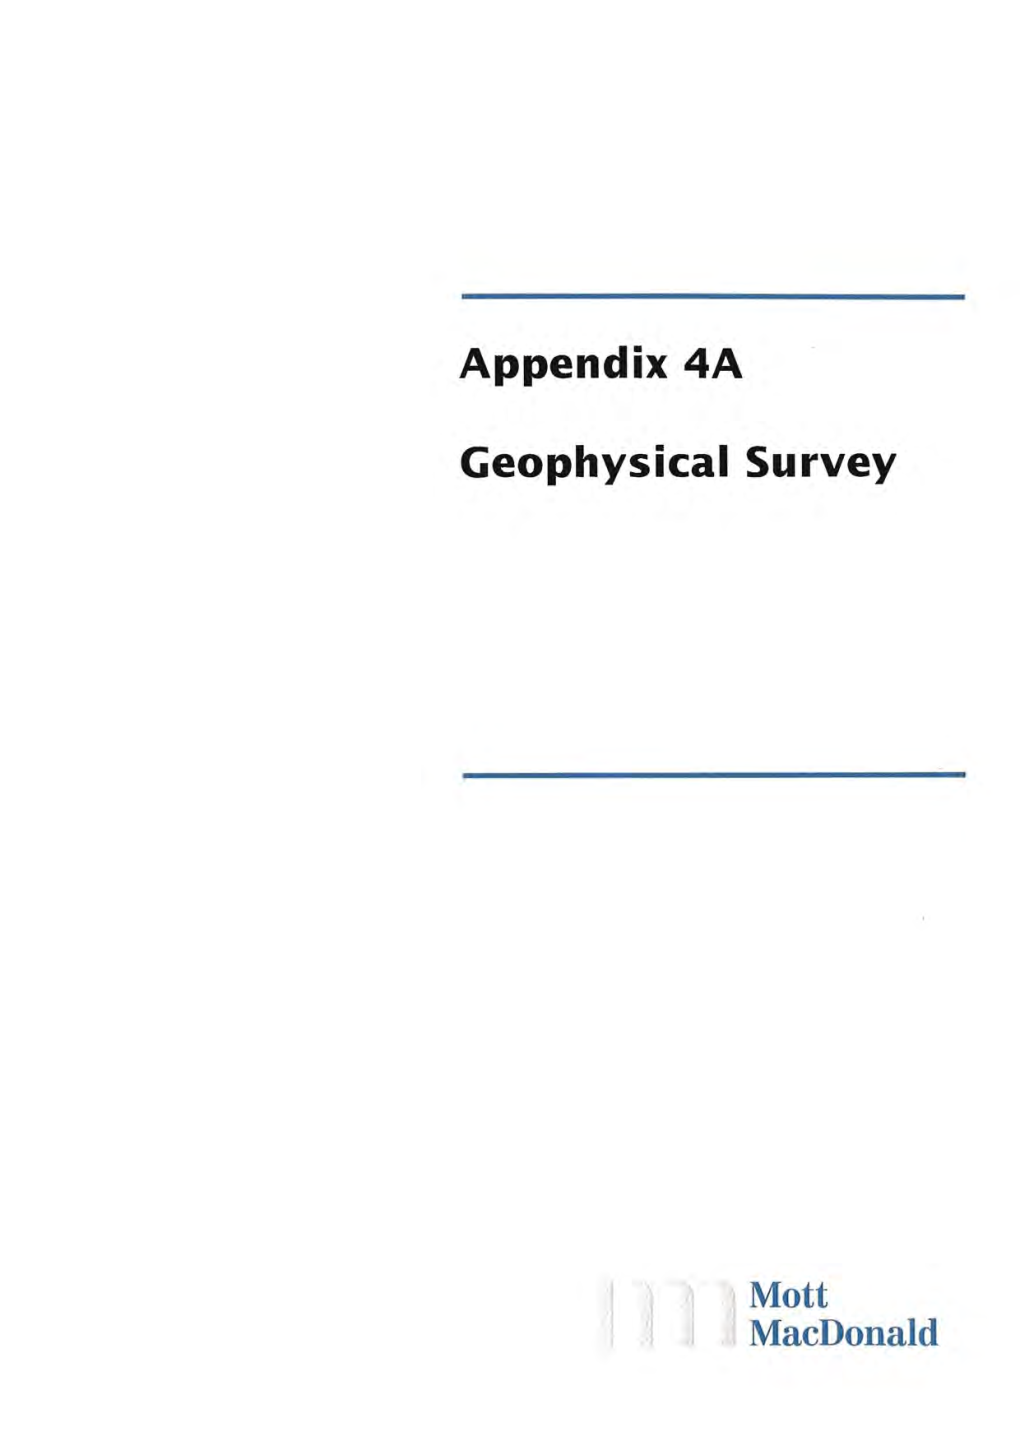 Appendix 4A Geophysical Survey